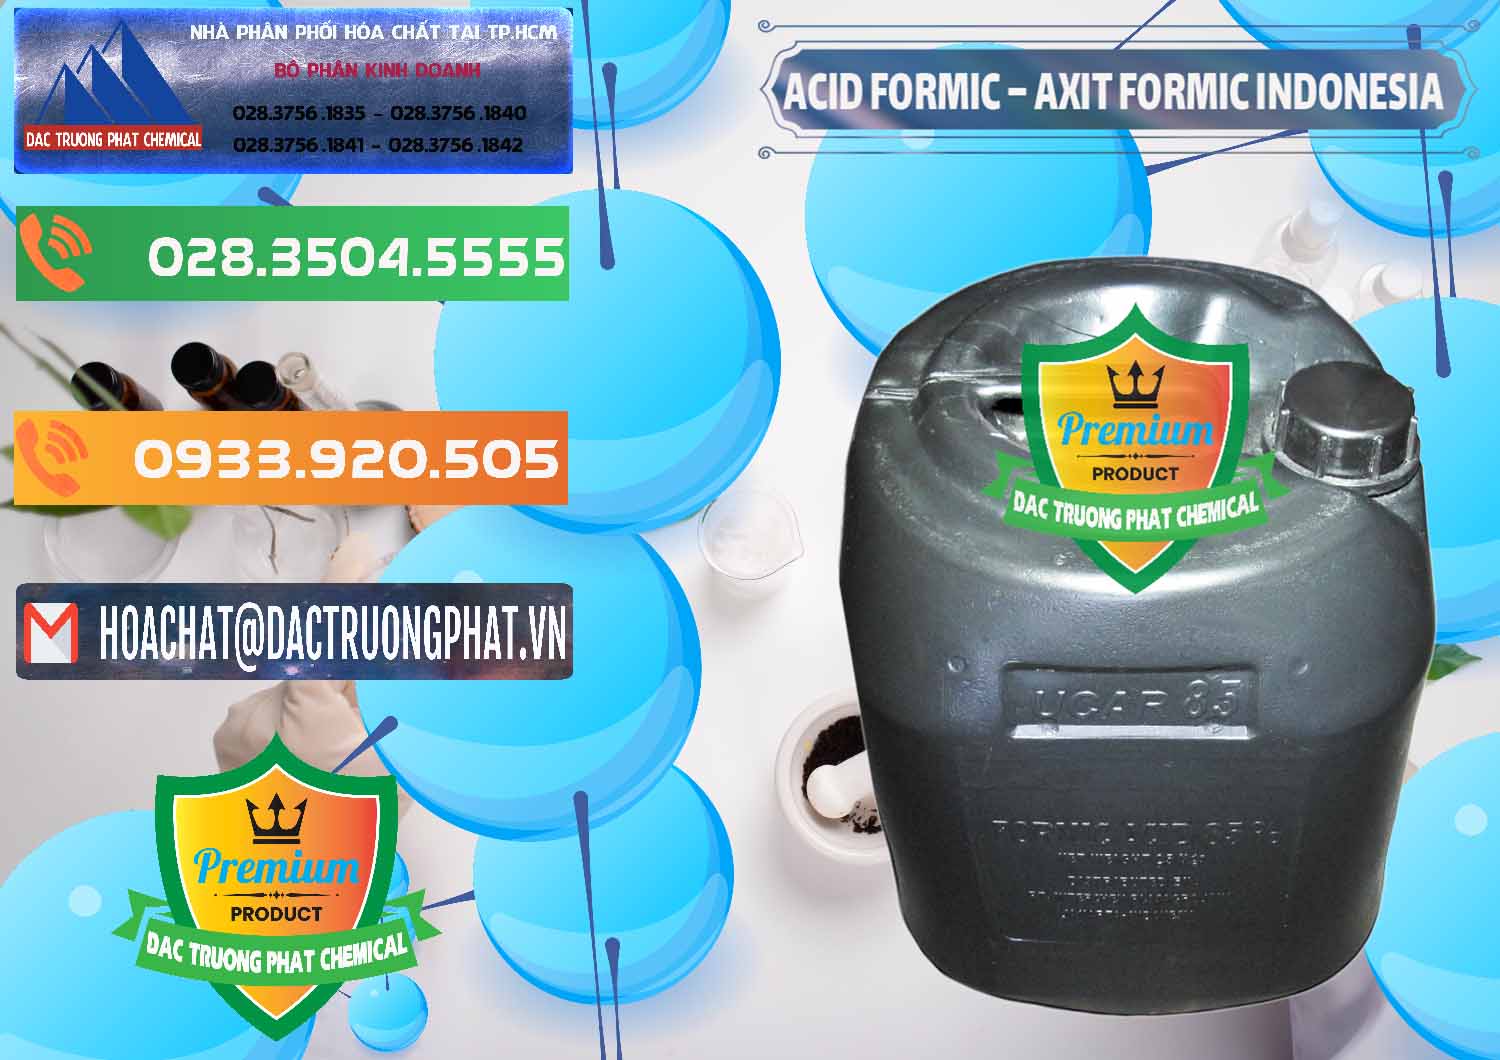 Công ty kinh doanh _ bán Acid Formic - Axit Formic Indonesia - 0026 - Cty bán _ cung cấp hóa chất tại TP.HCM - hoachatxulynuoc.com.vn